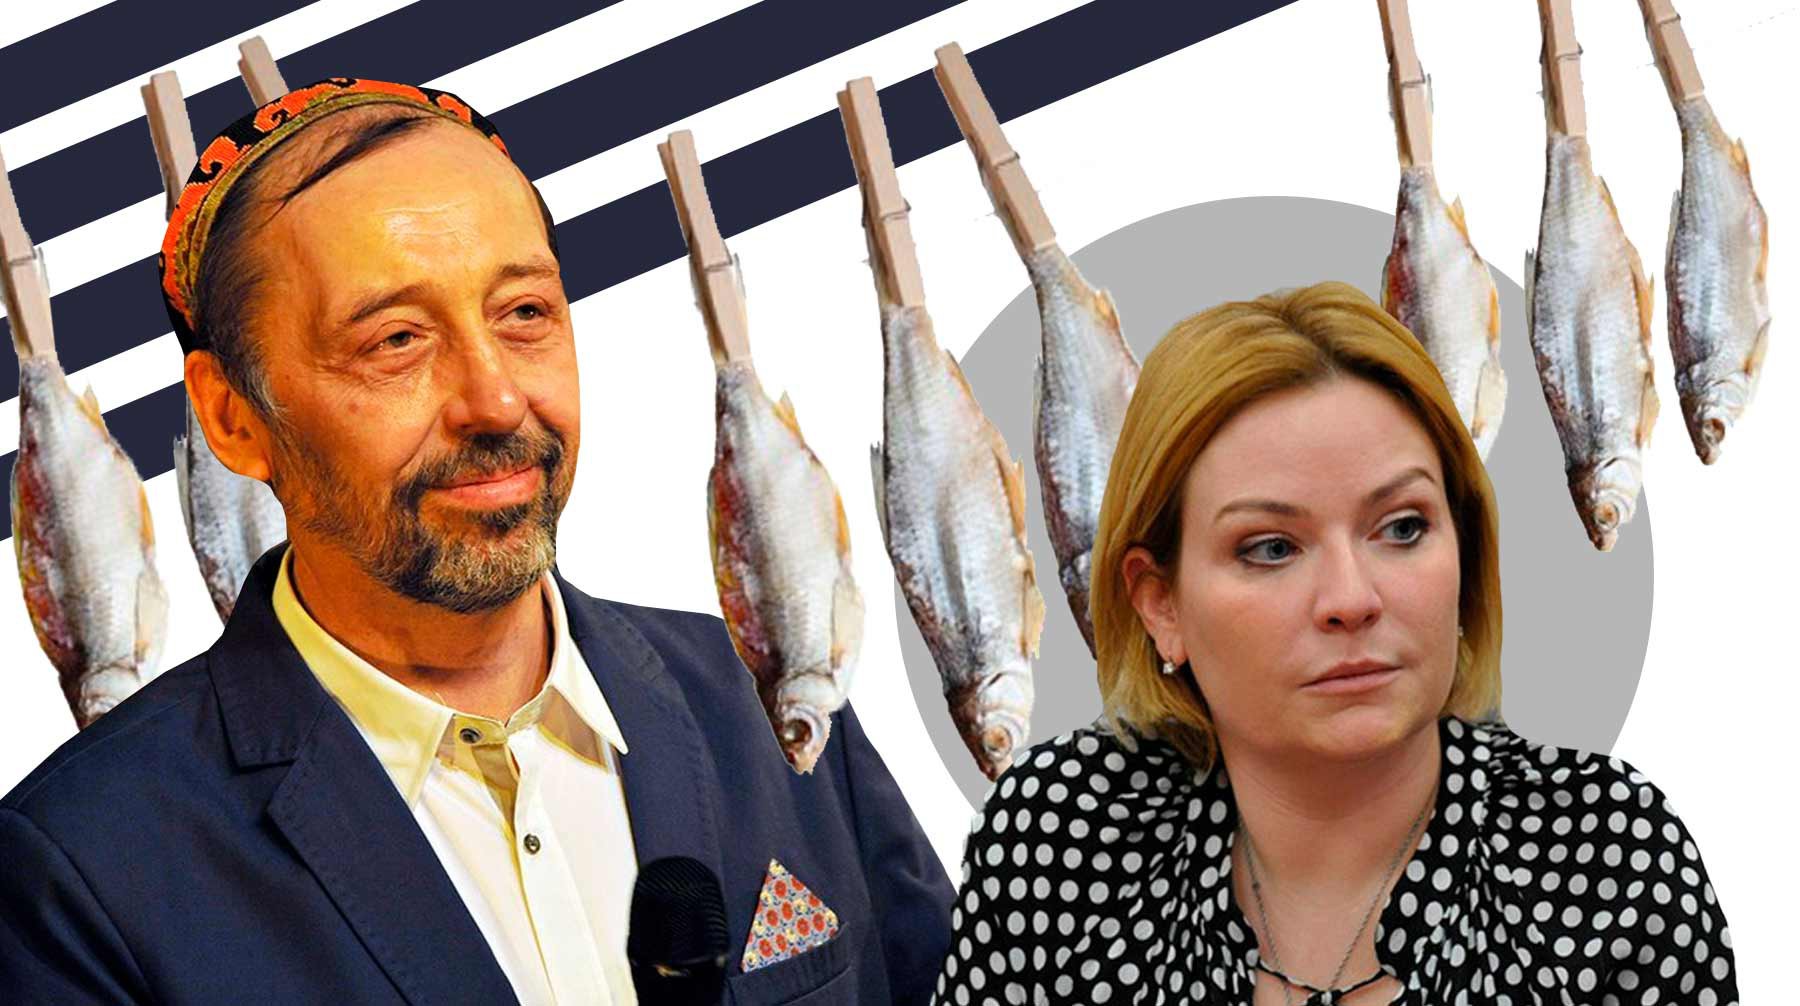 Dailystorm - Николай Коляда: У нового министра культуры глаза заинтересованные, не рыбьи